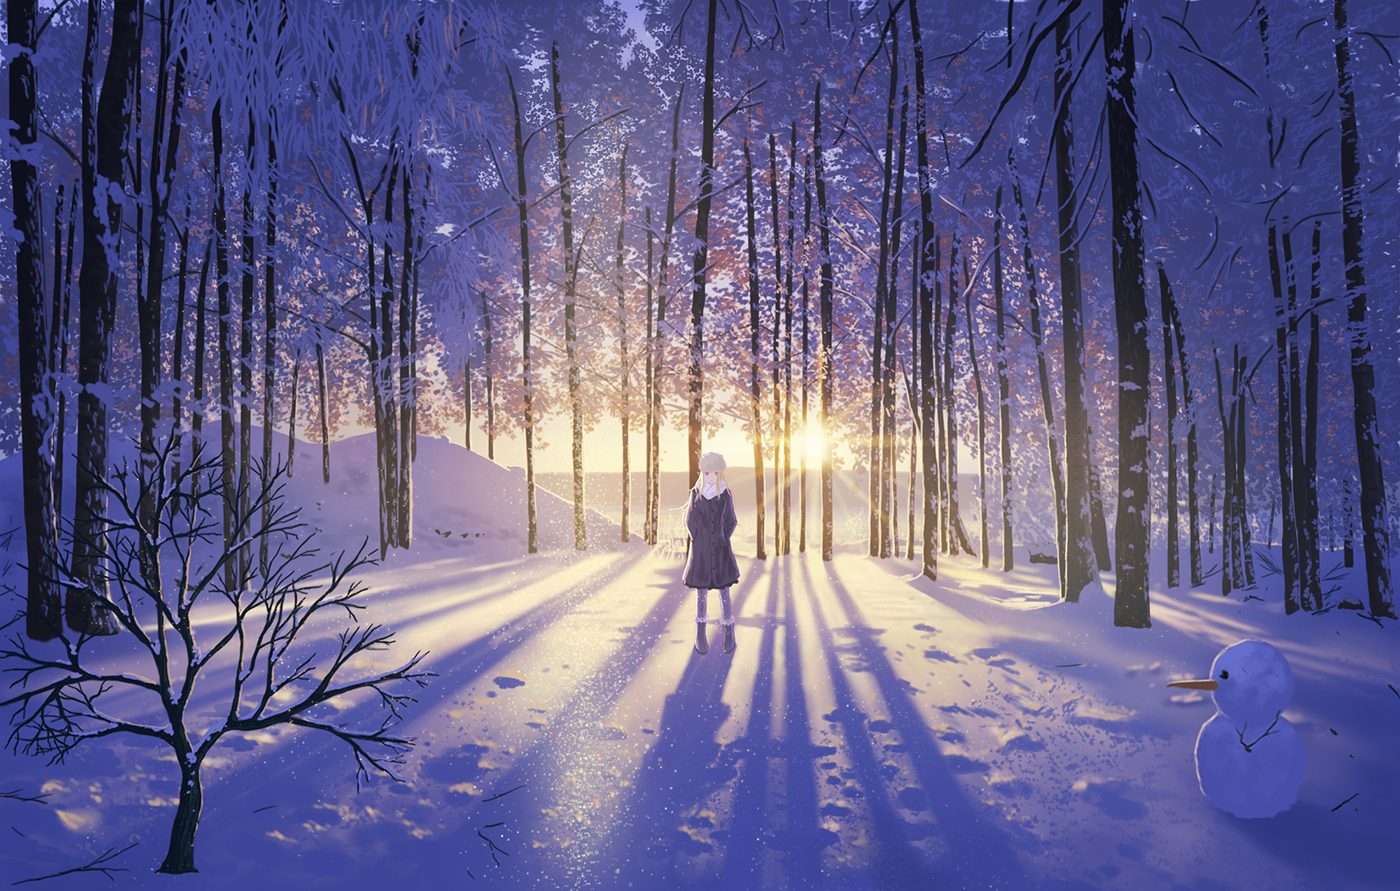 1 二次風景画像 5枚 自然 雪山 冬 イラスト 壁紙 風景と少女による可能世界